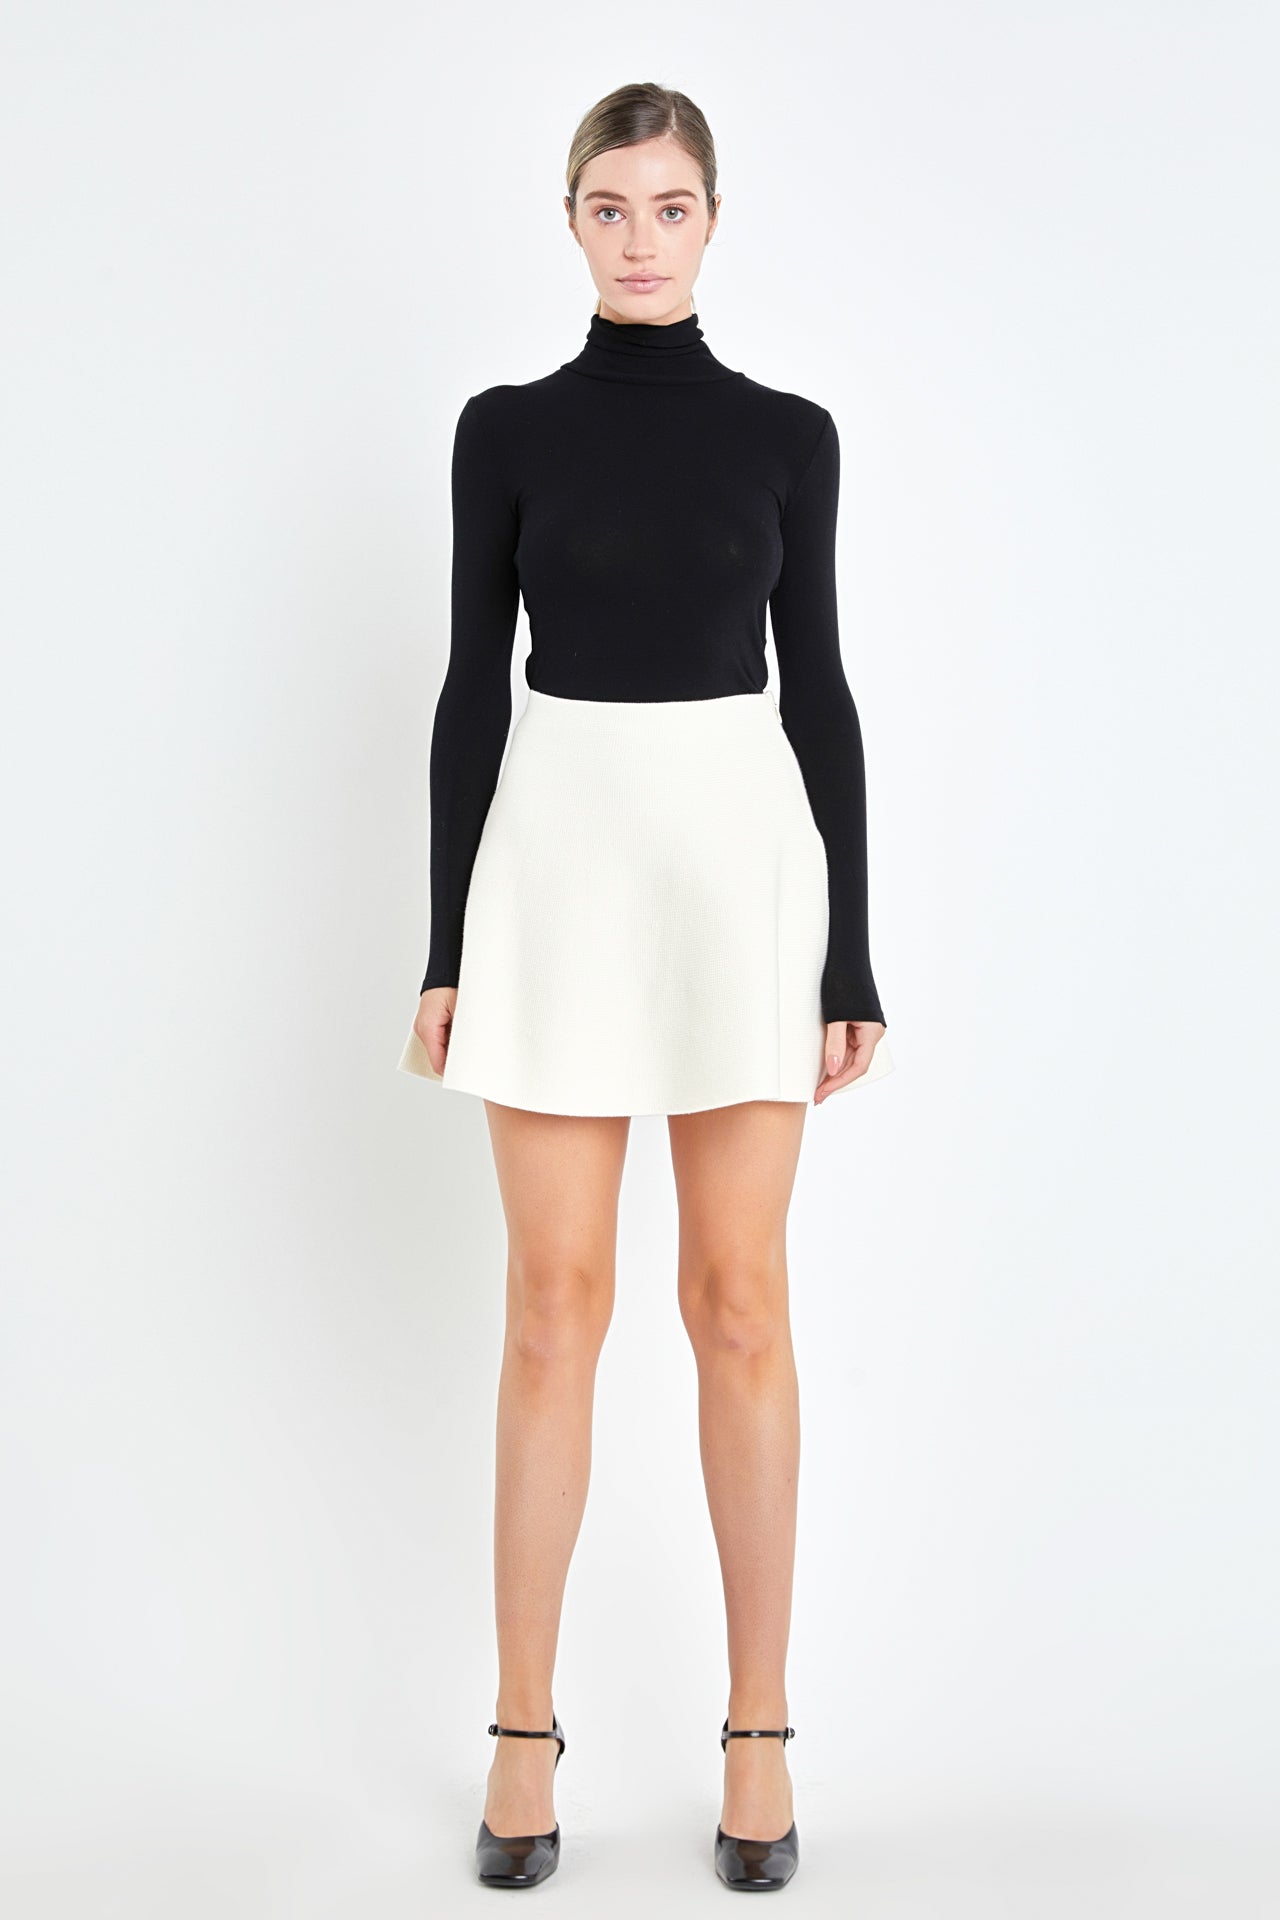 High-Waisted A-Line Mini Skirt